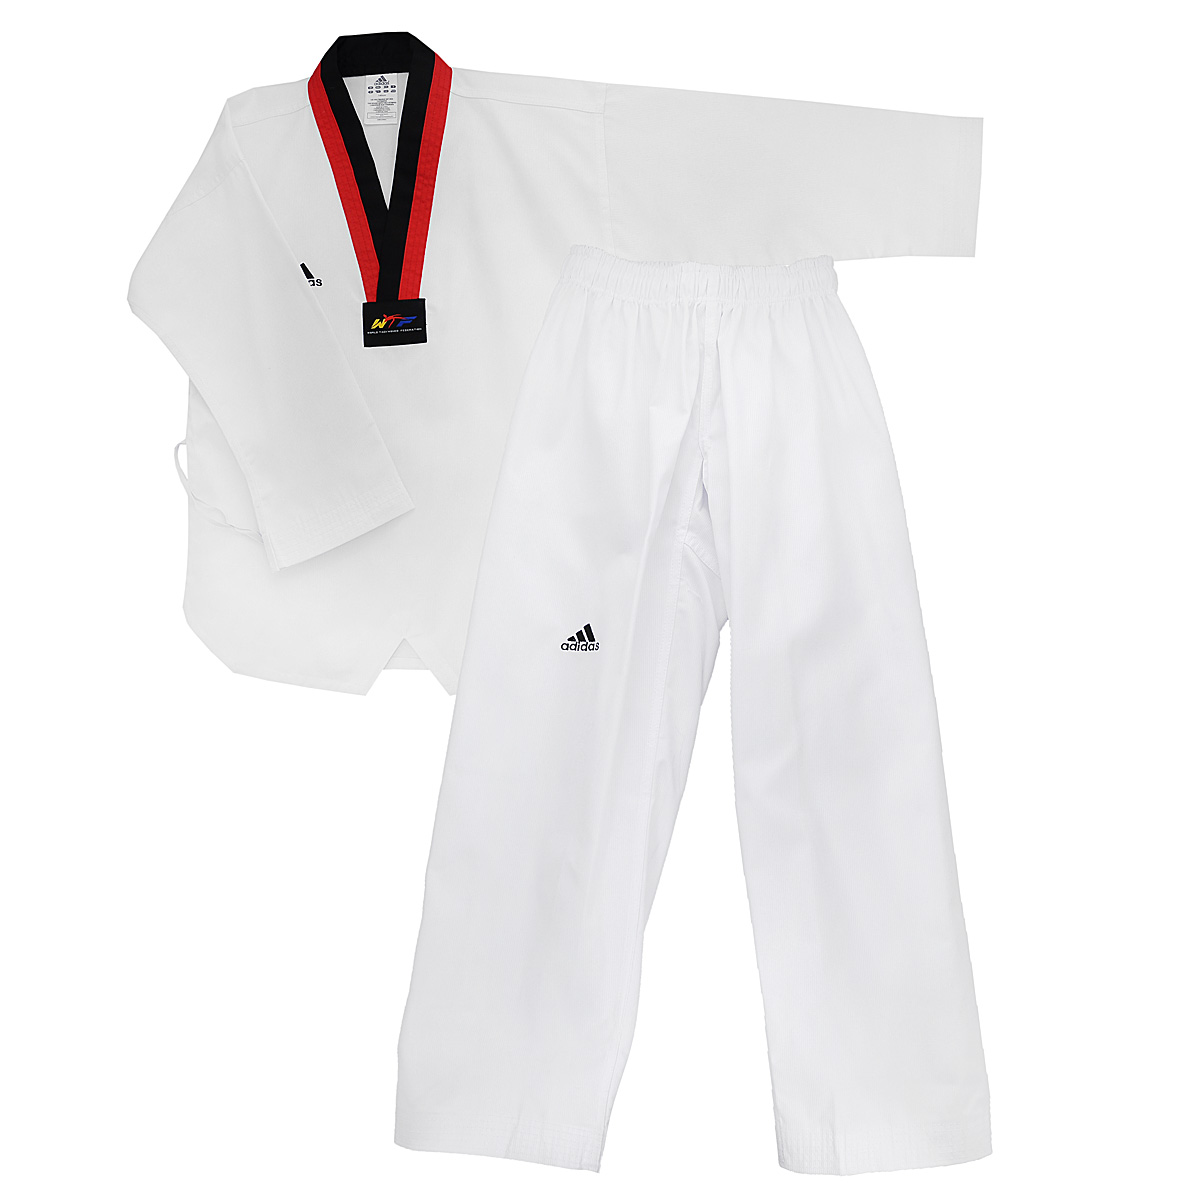 Кимоно для тхэквондо adidas Taekwondo Adi-Start, цвет: белый, черный, красный. adiTS01-WH/RD-BK. Размер 160